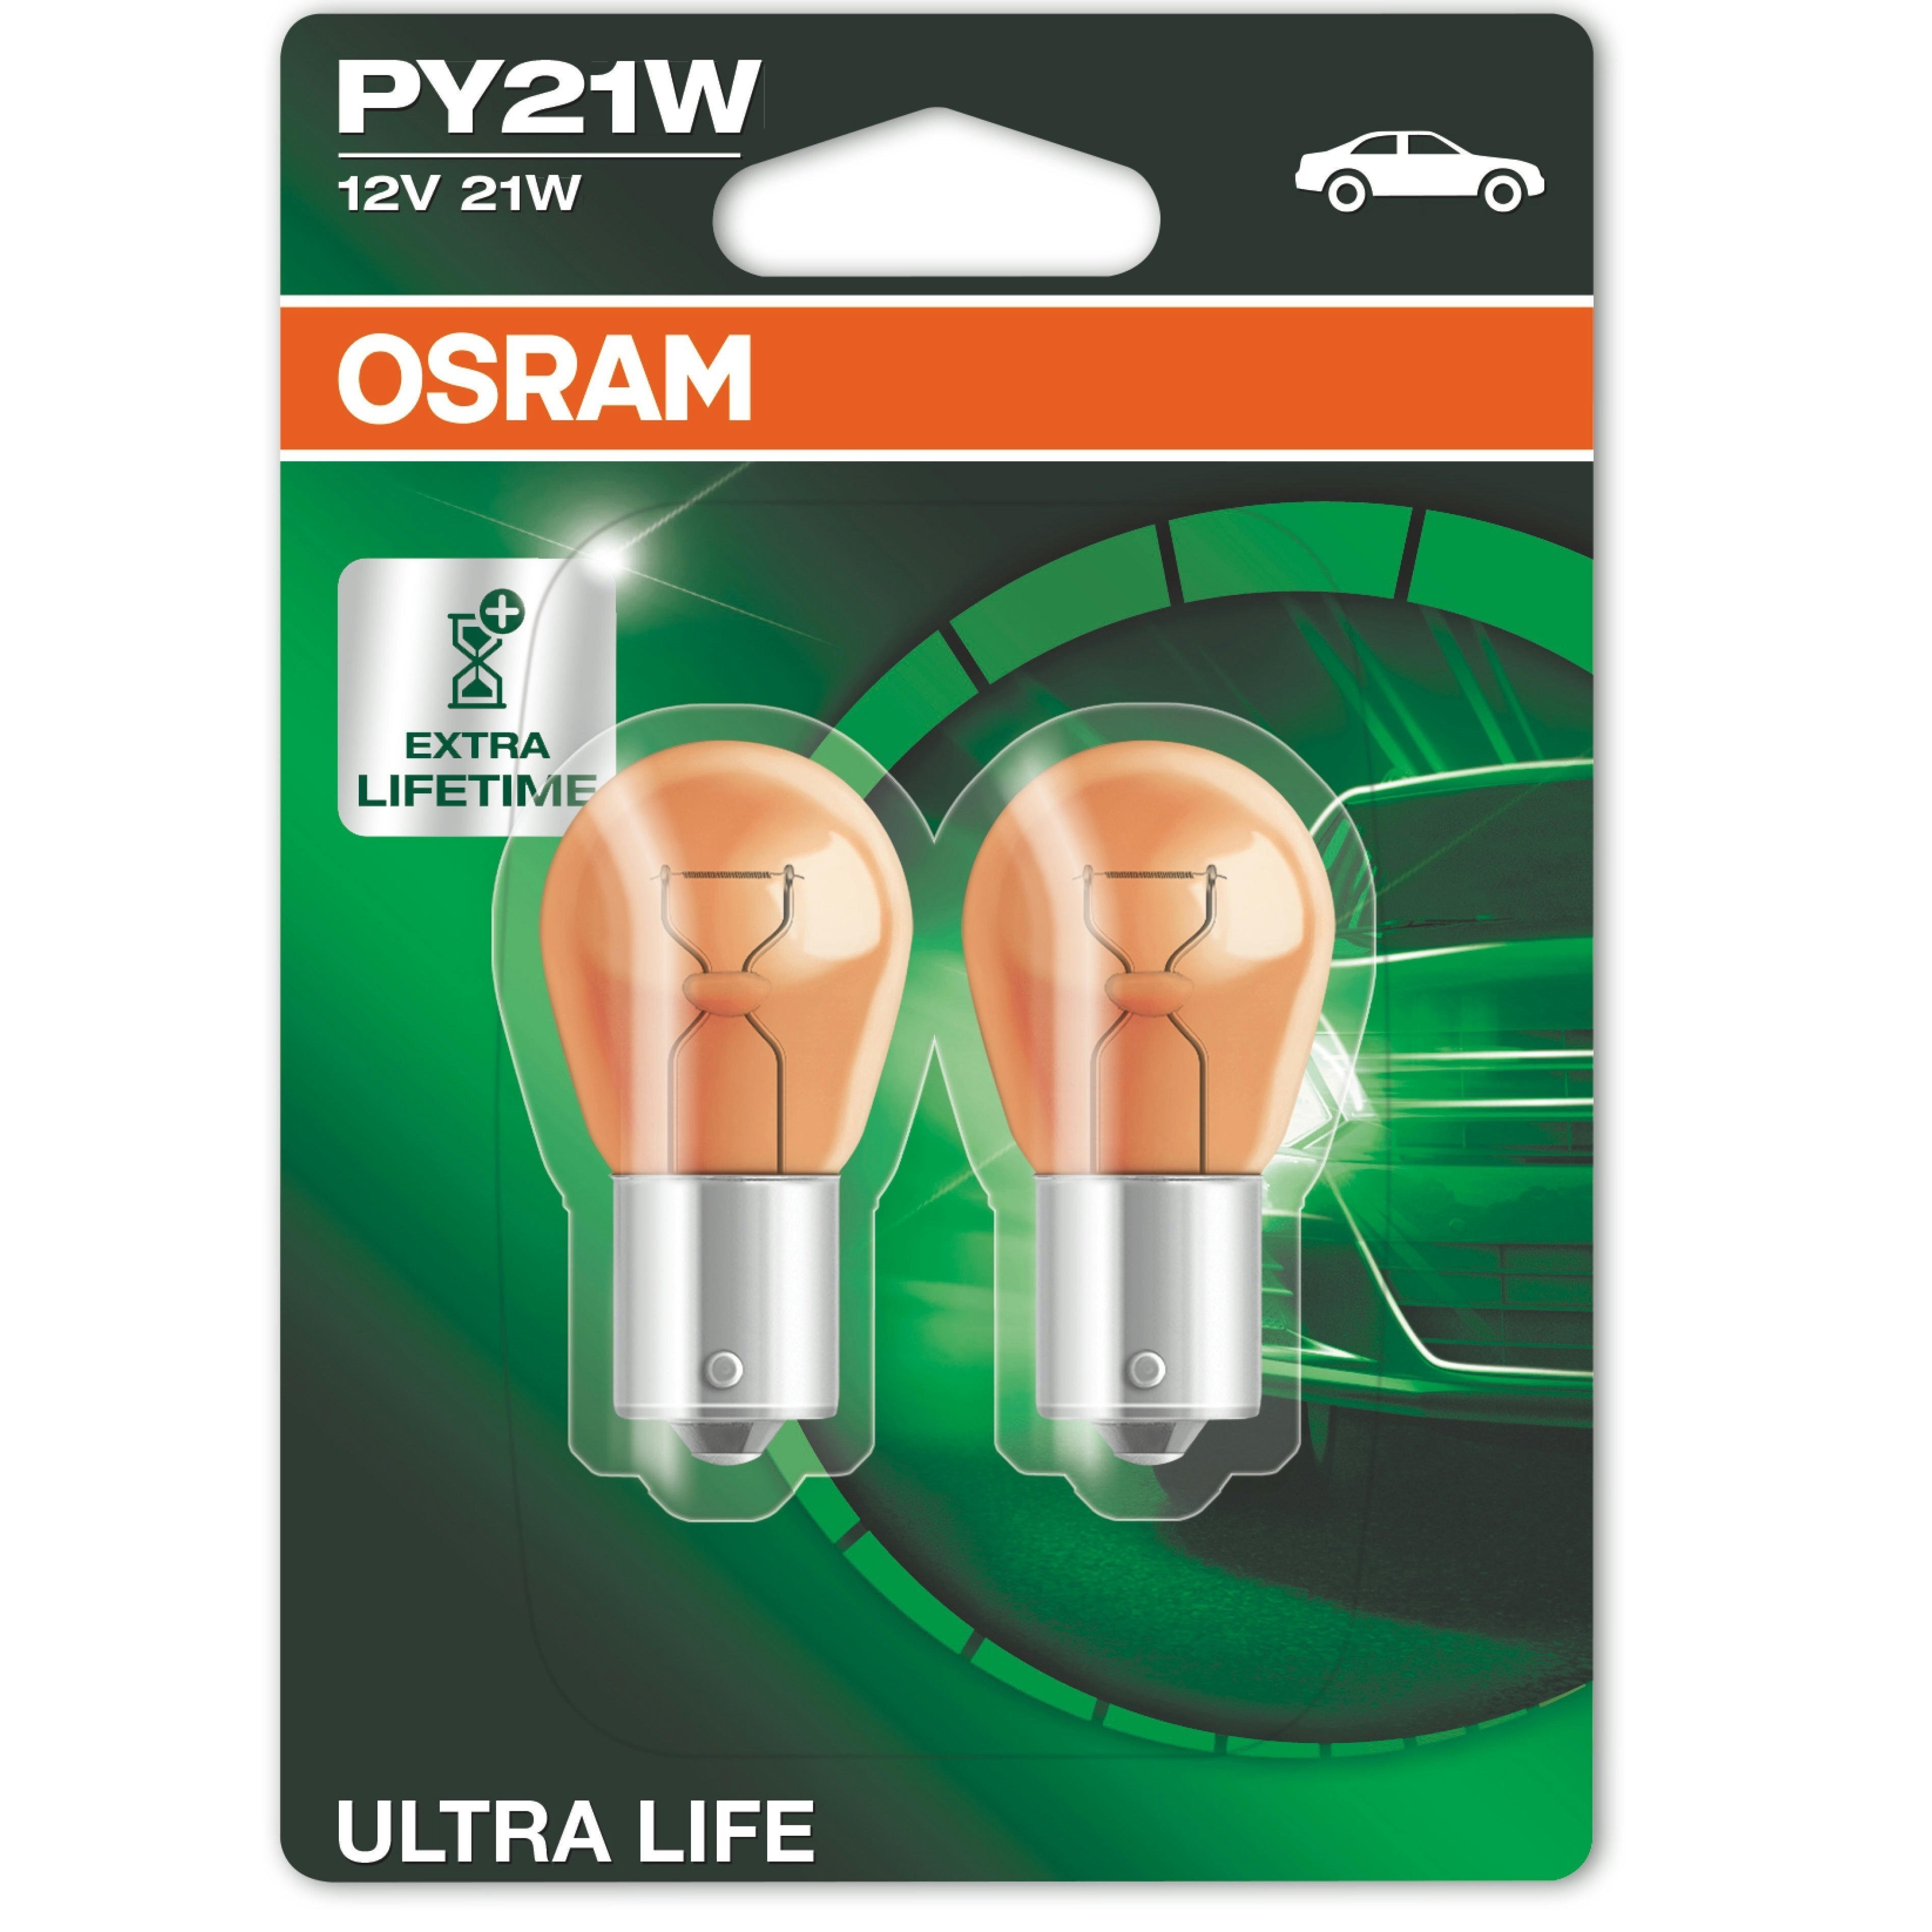 Лампа Osram накаливания 12V Py21W 21W Bau15S Ultra Life (2шт) (OS_7507_ULT-02B) фото 1